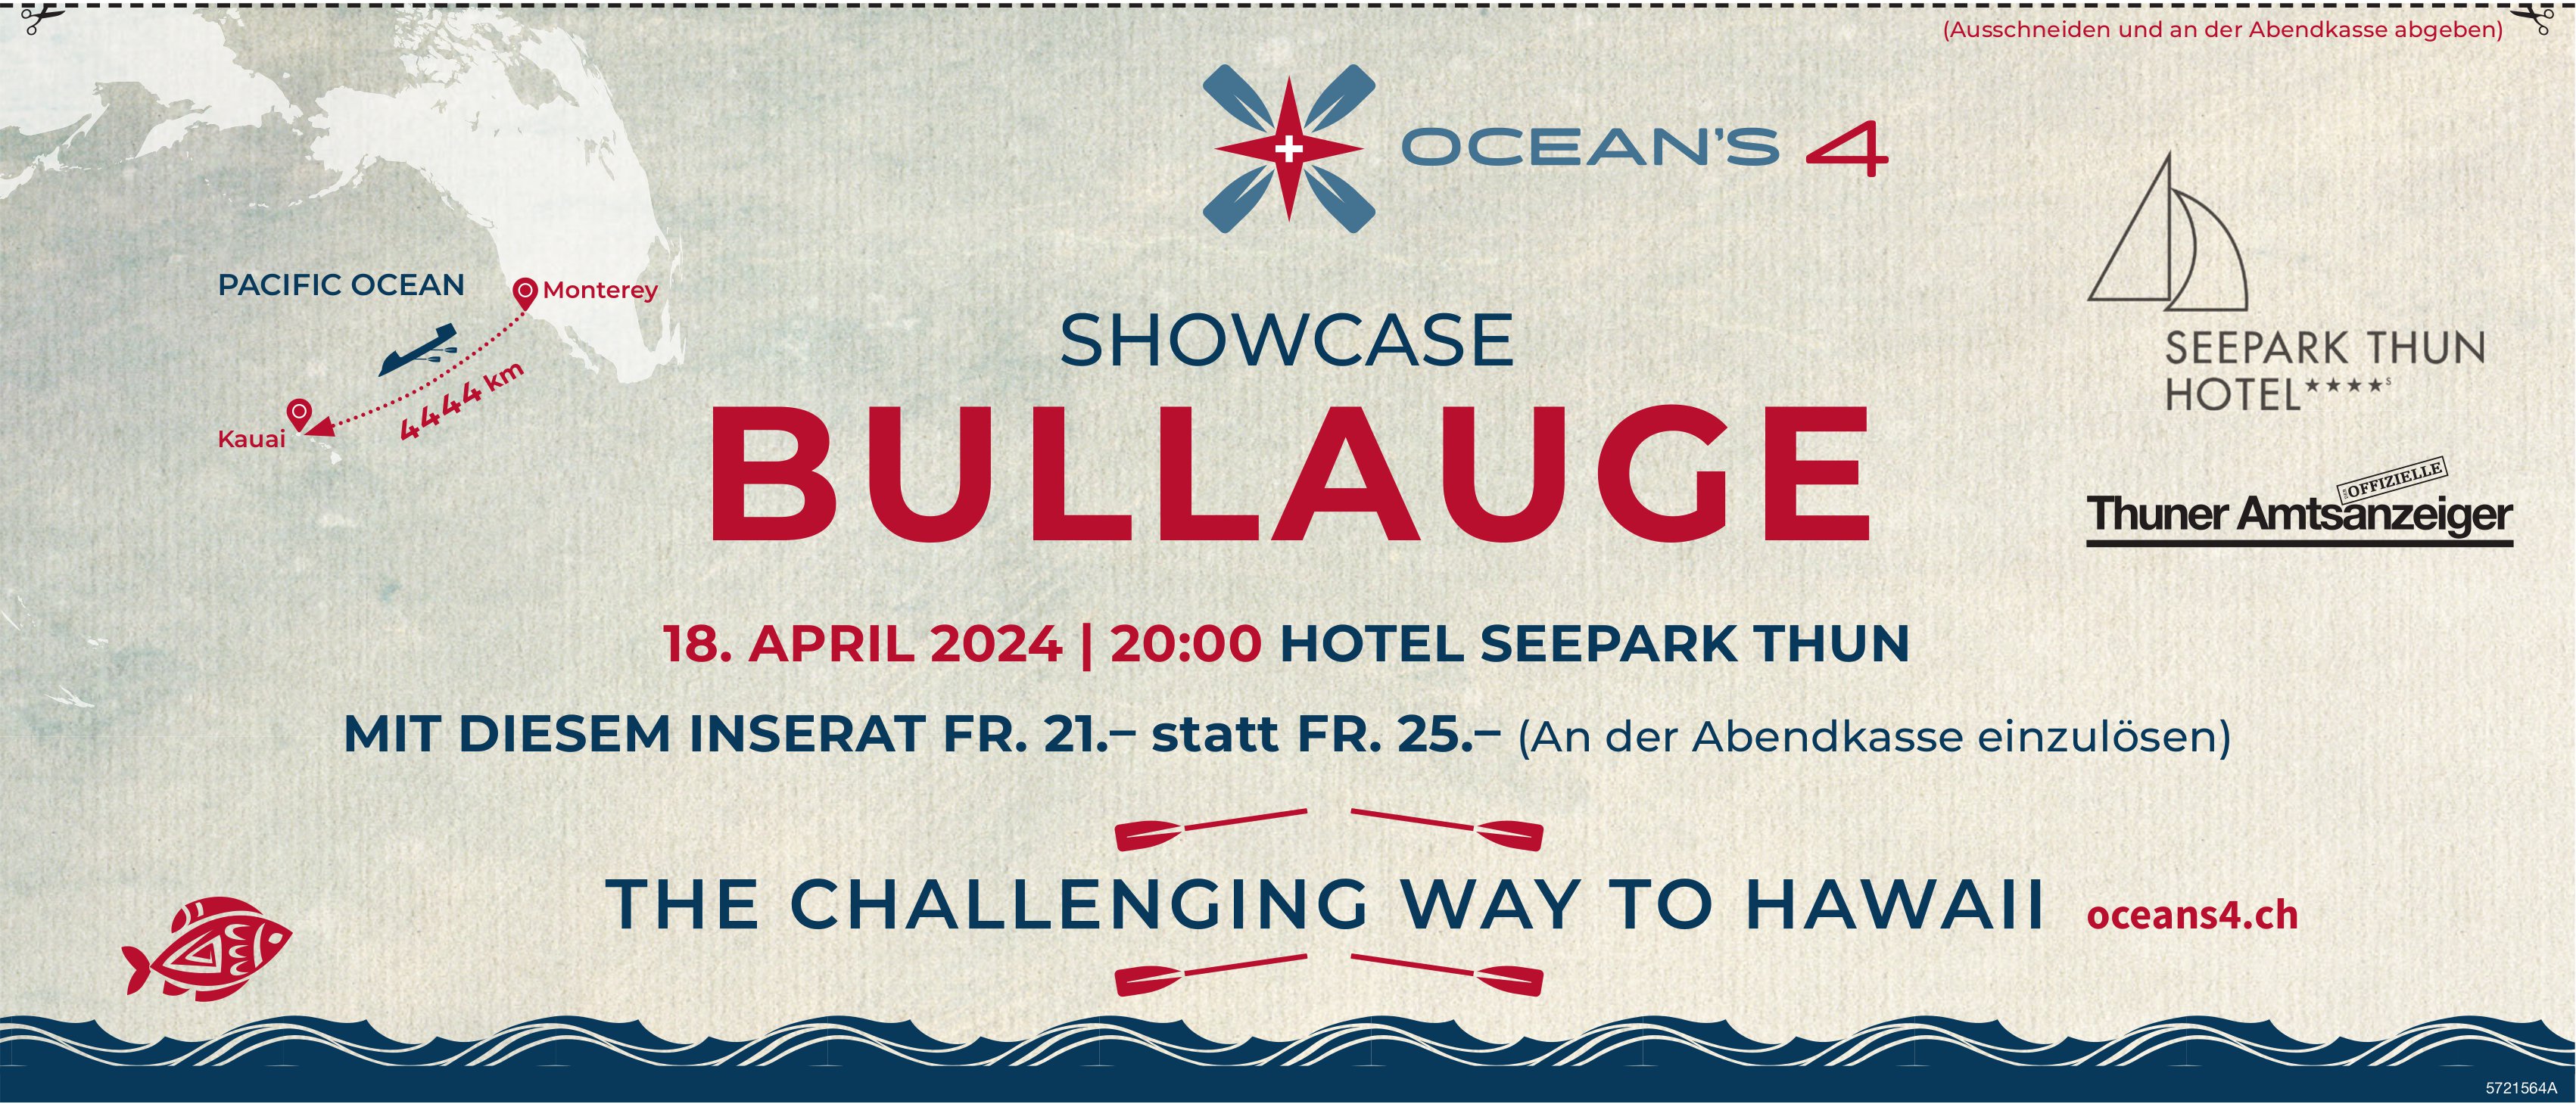 Showcase Bullauge, 18. April, Hotel Seepark, Thun